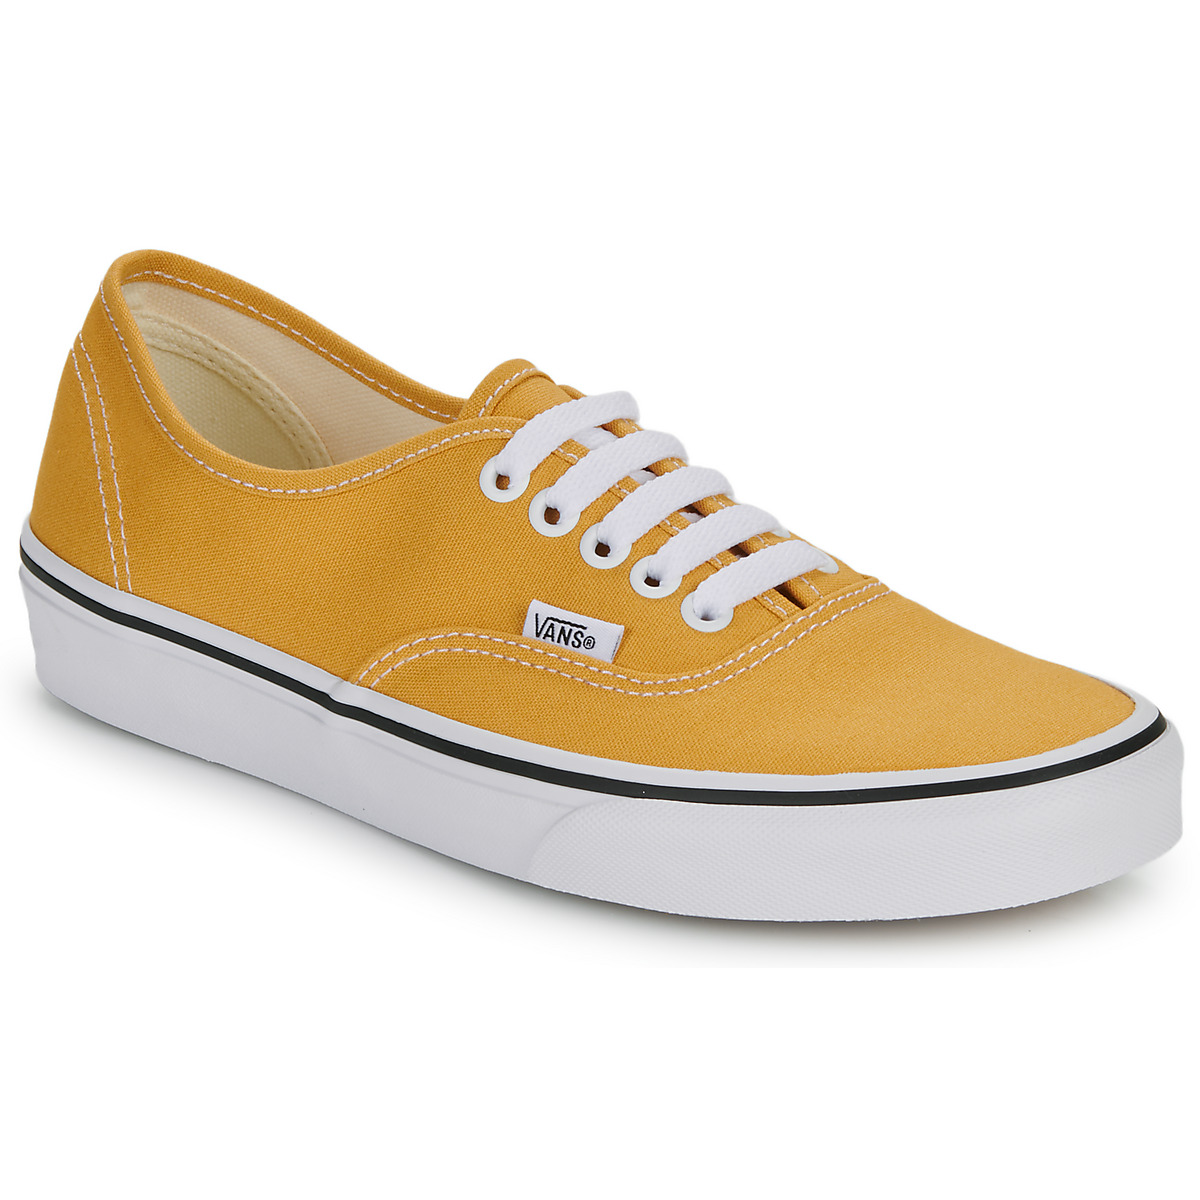 鞋子 球鞋基本款 Vans 范斯 Authentic 黄色